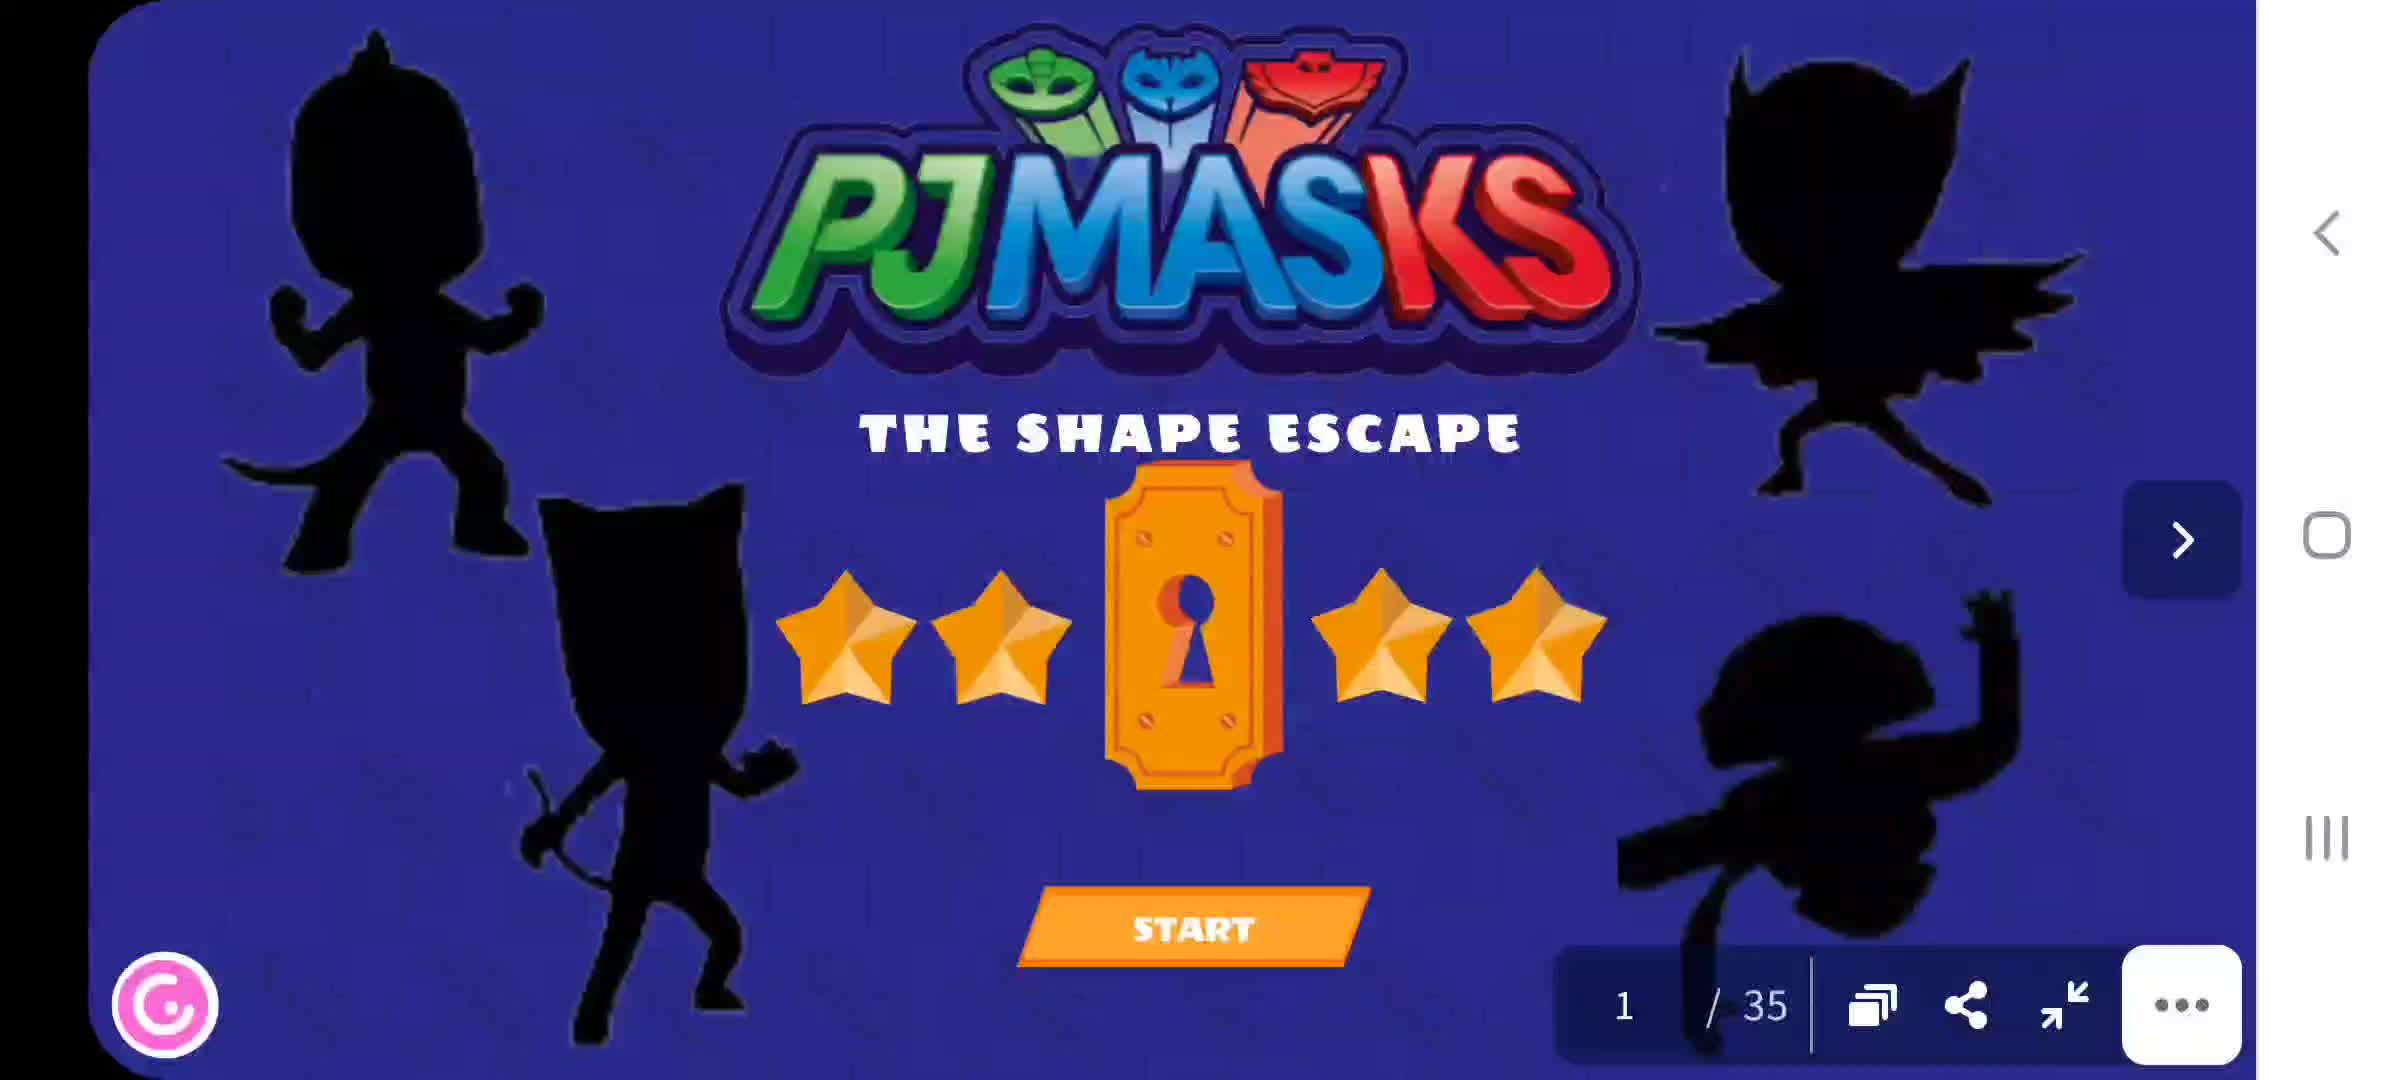 Pj masks game - 2D shapes